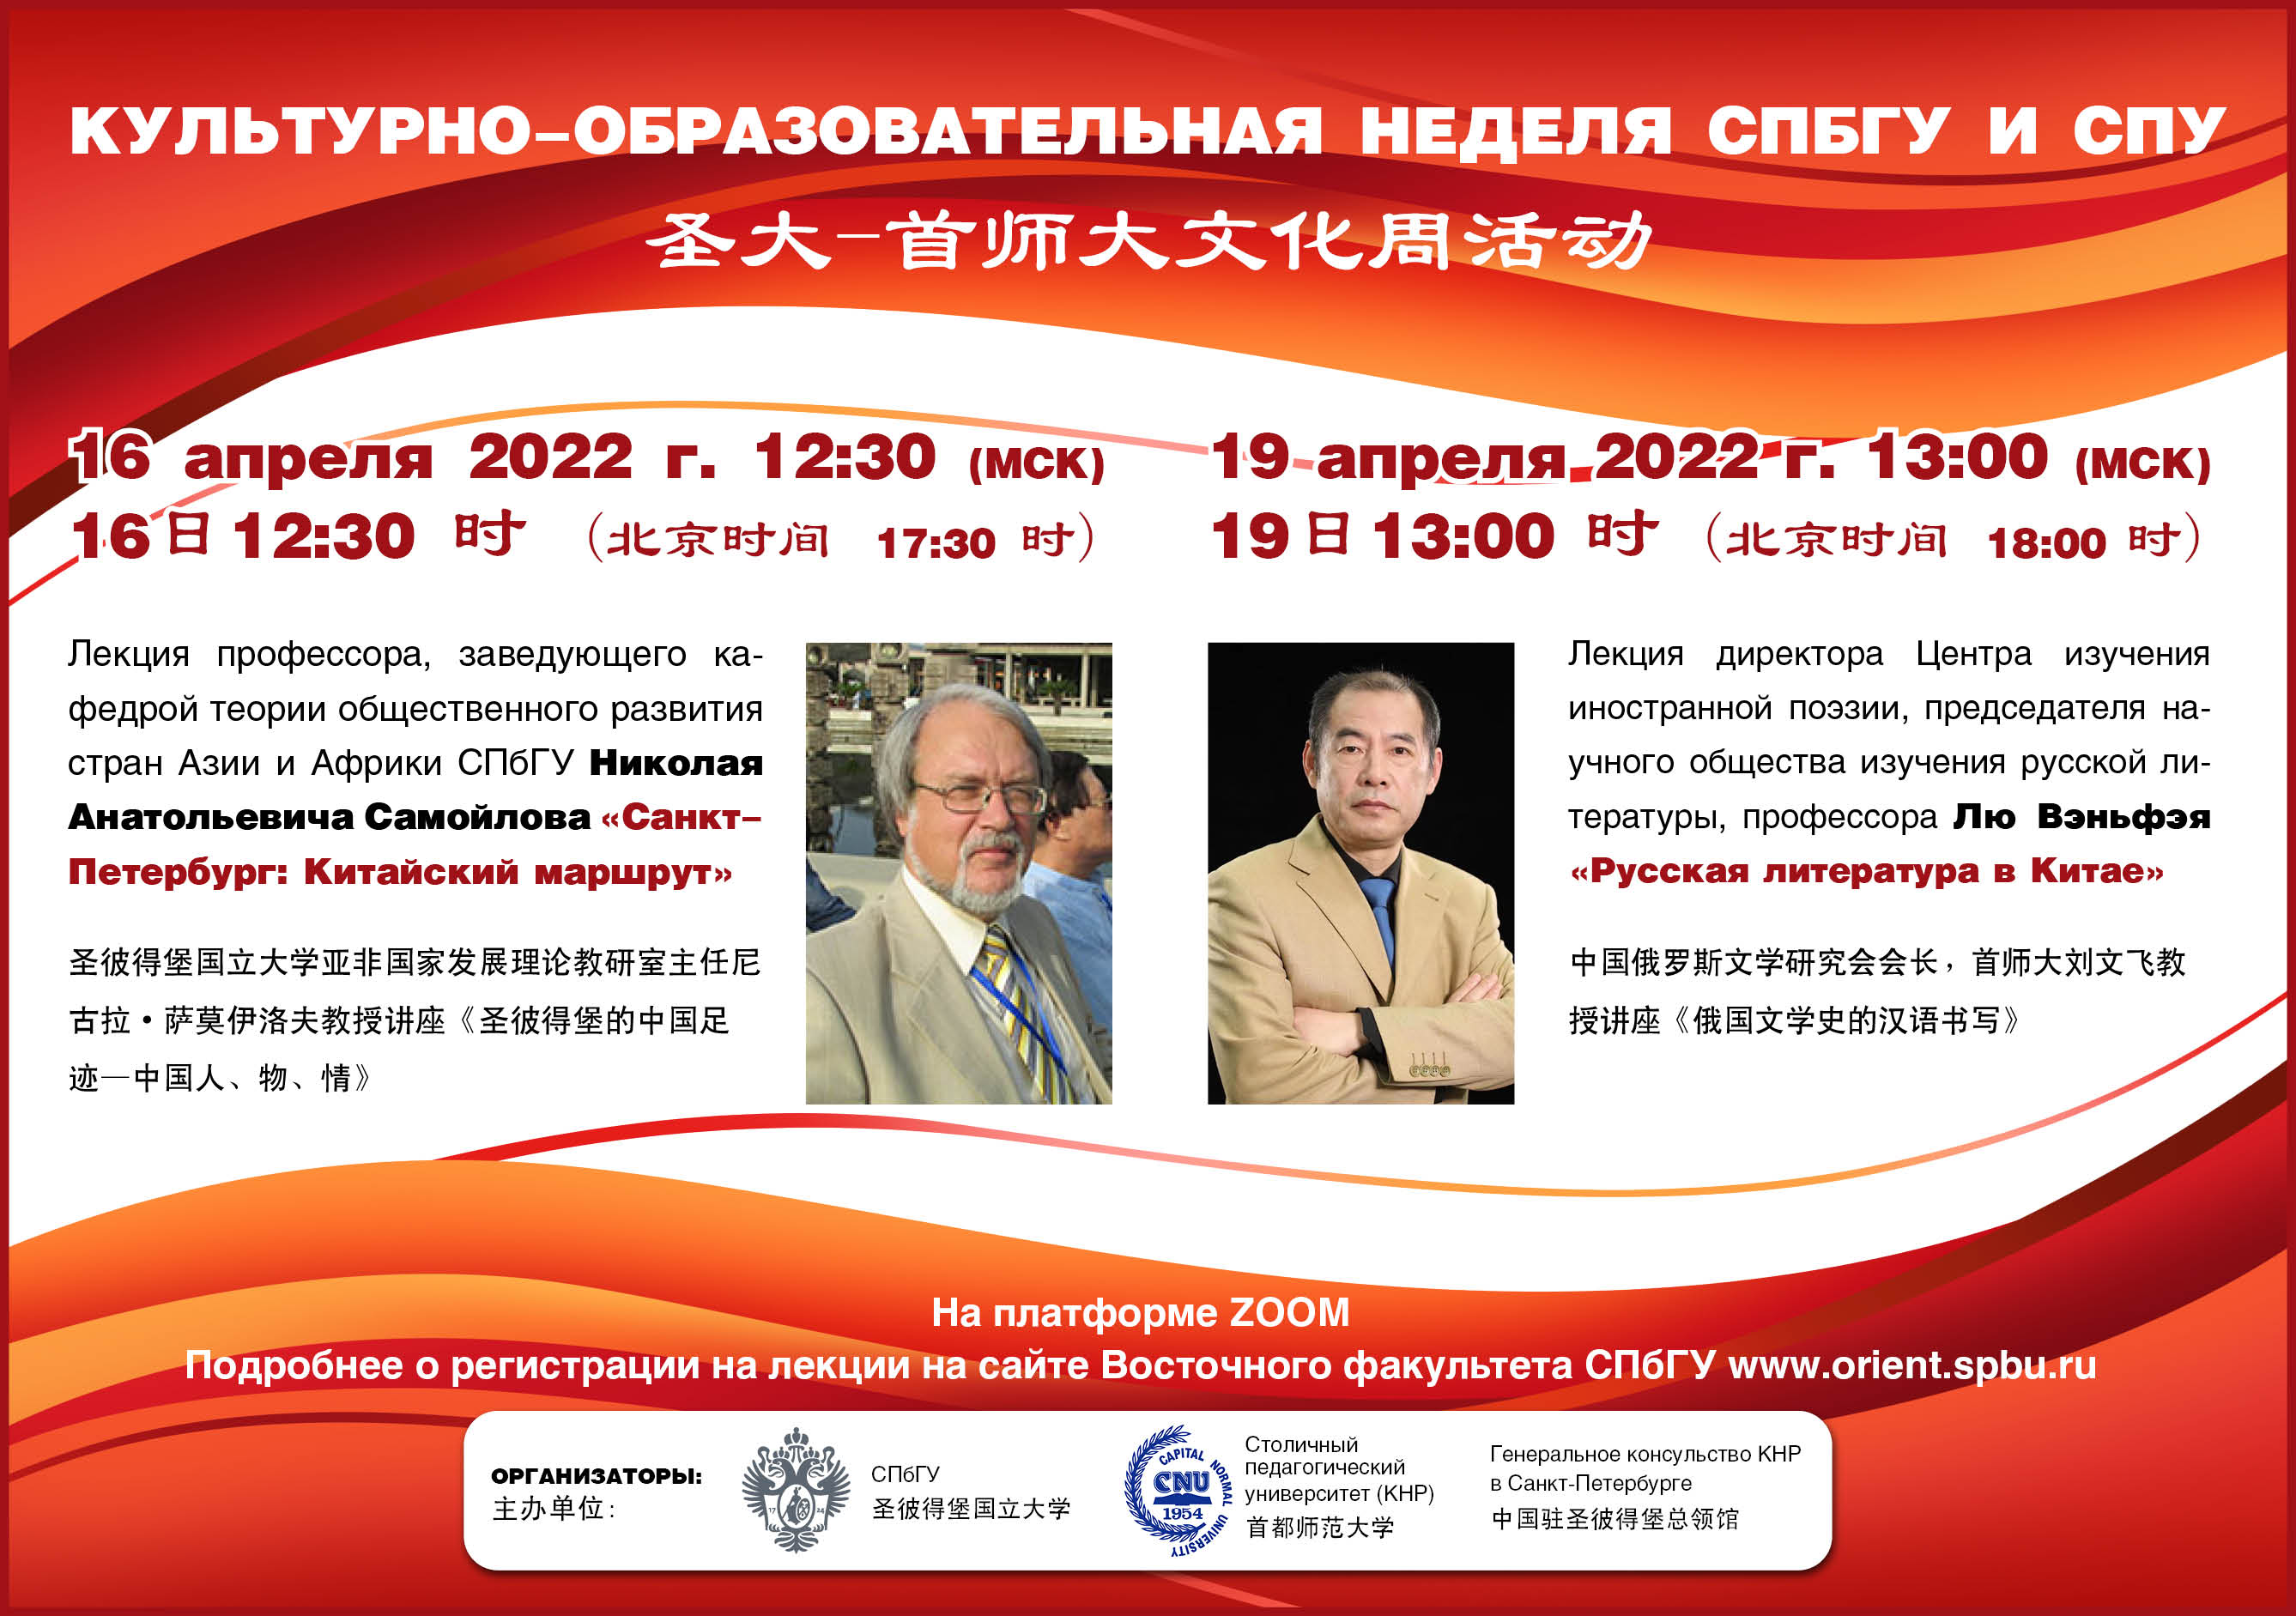 19 апреля — лекция «Русская литература в Китае» 